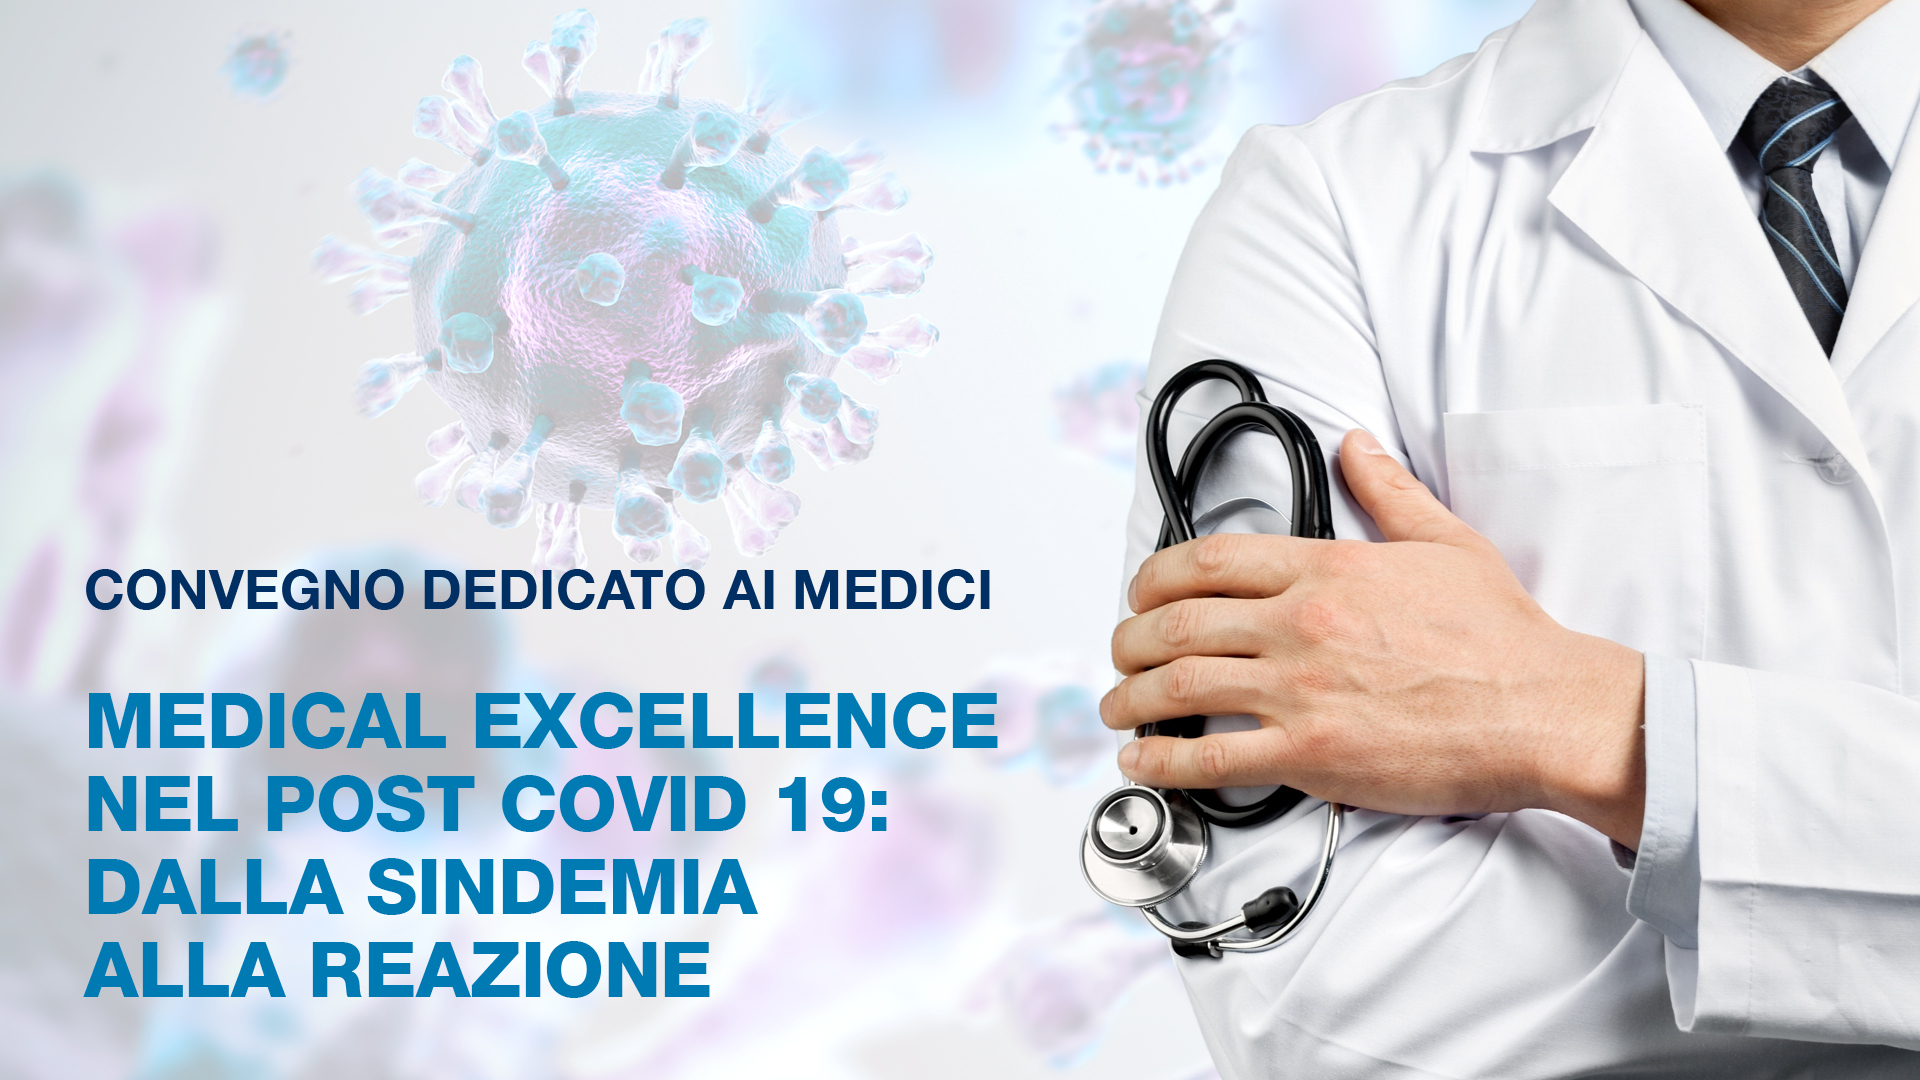 Convegno dedicato ai Medici – Medical Excellence nel post Covid 19: dalla sindemia alla reazione